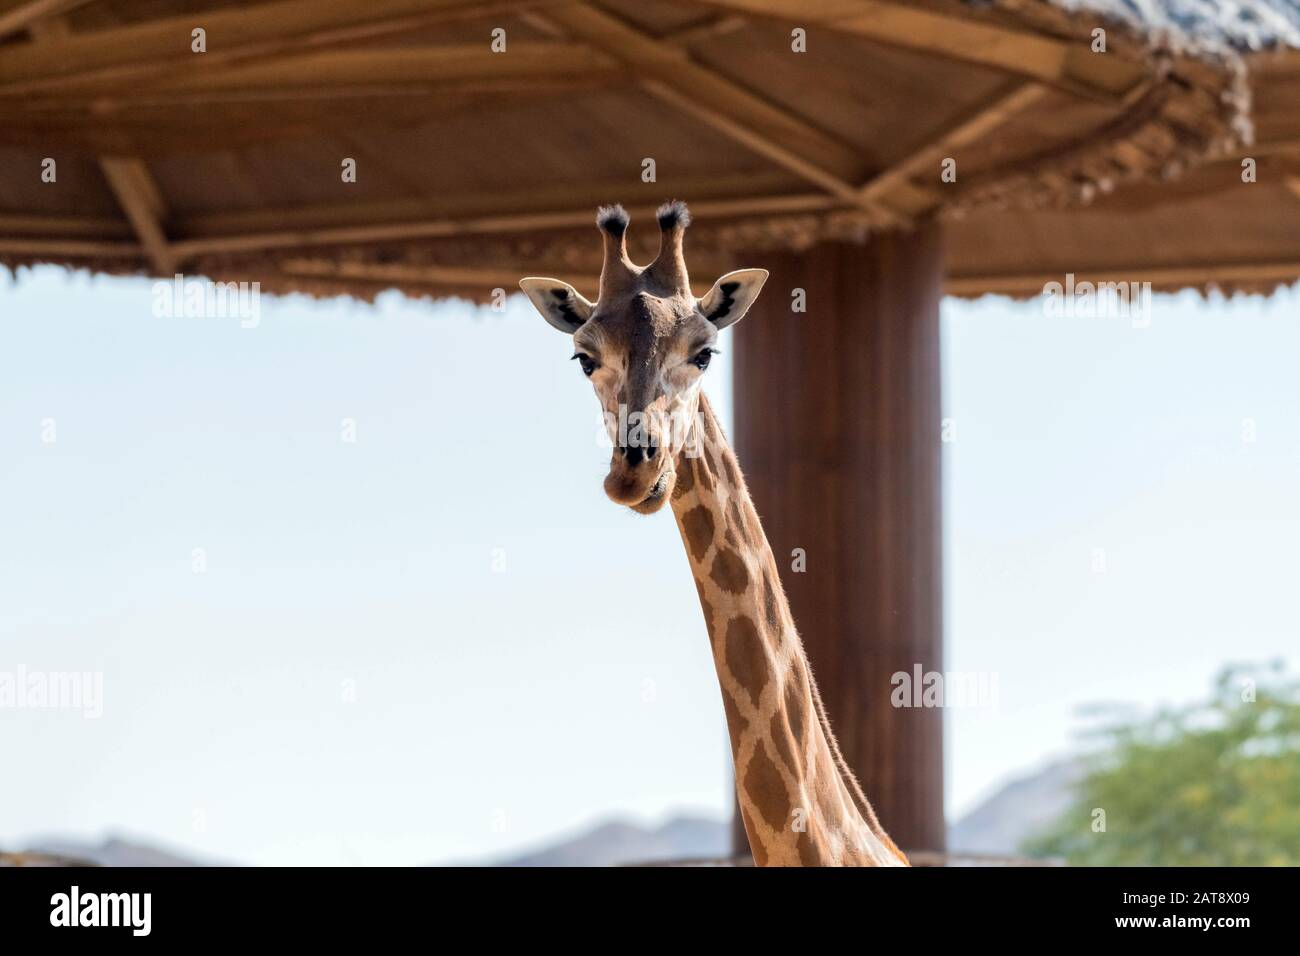 Magnifique giraffe sauvage dans le parc Safari du zoo d'Al Ain, Émirats arabes Unis Banque D'Images